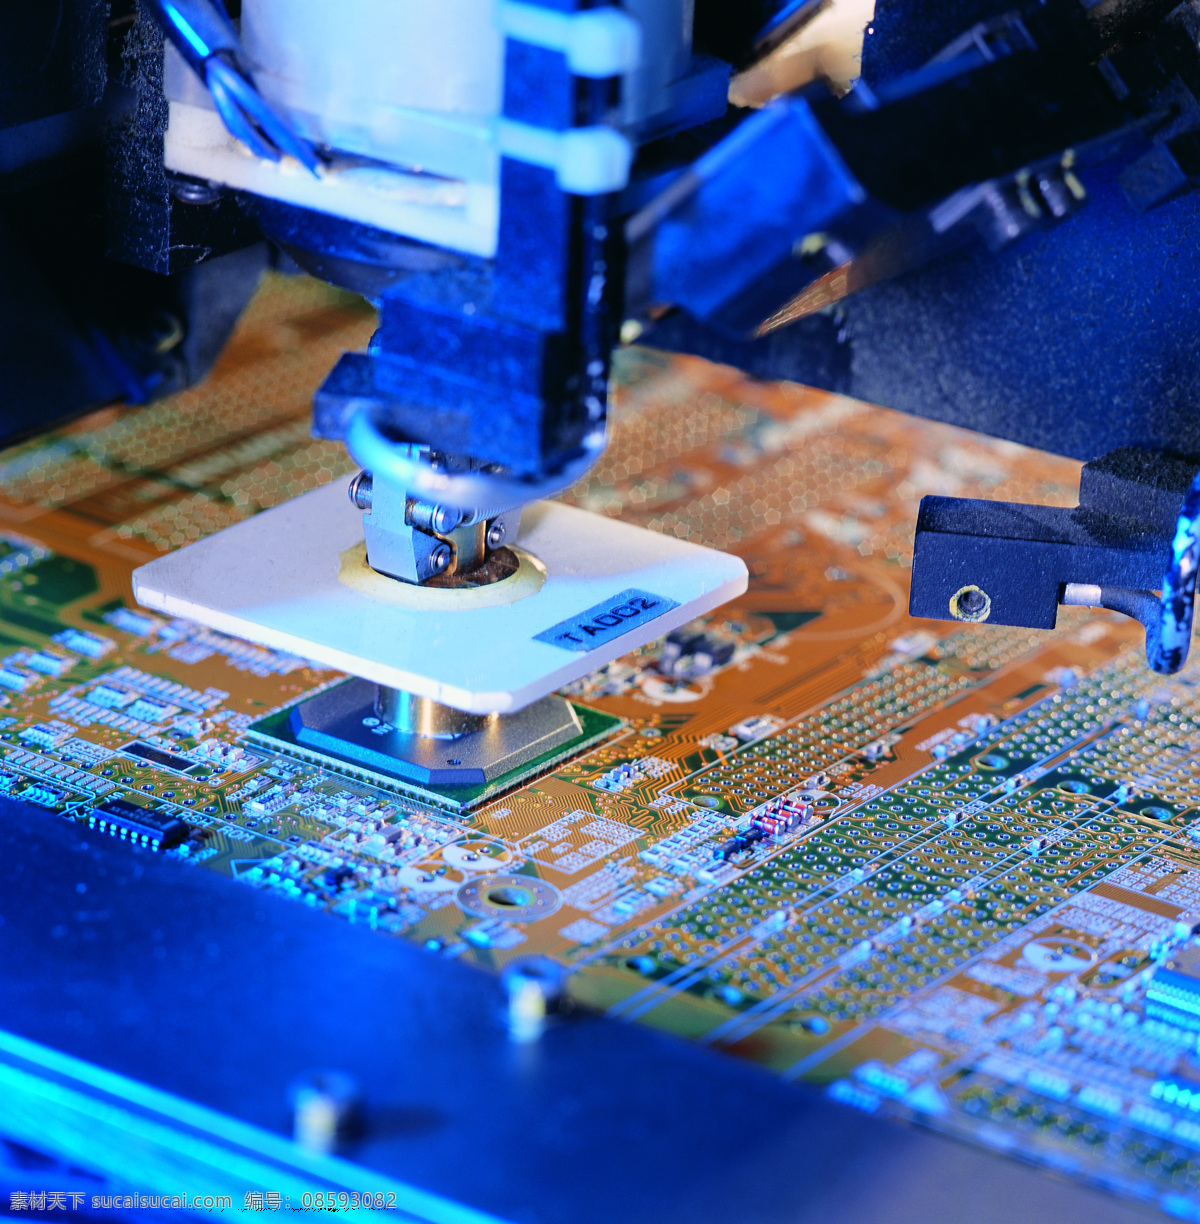 主機板 ic版 電子 零件 科技產品 零組件 工業產品 工业生产 现代科技